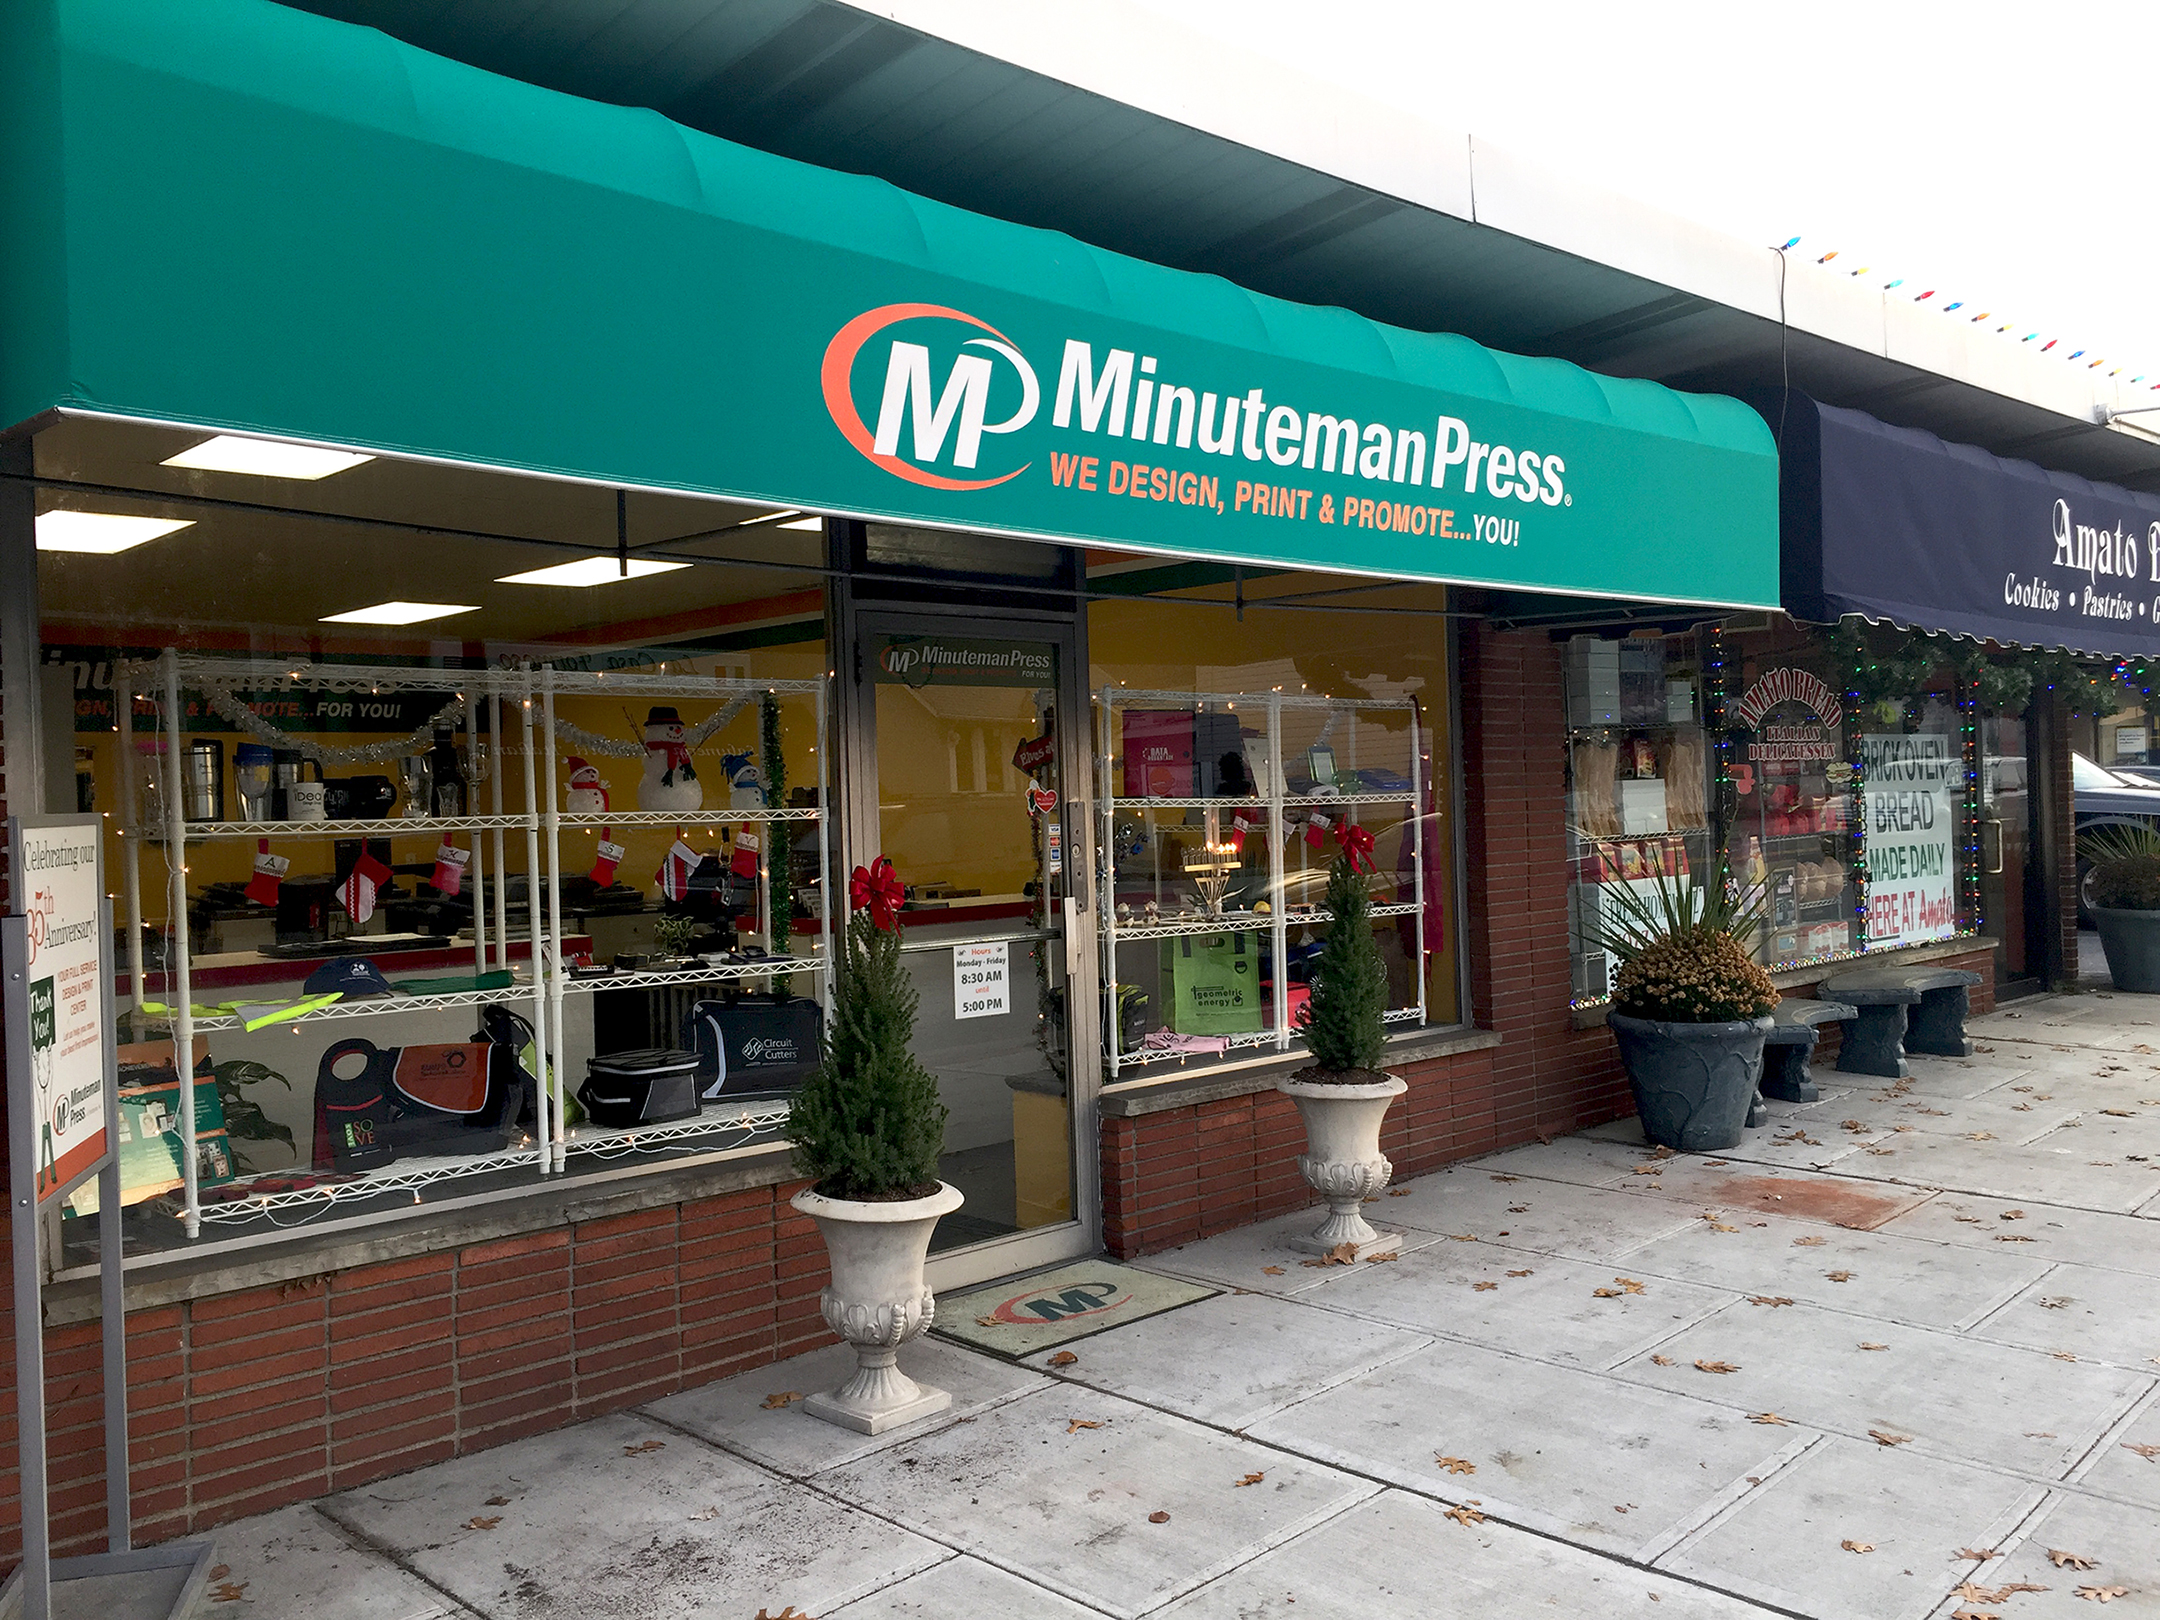 Minuteman Press franchise in Northvale, NJ - storefront